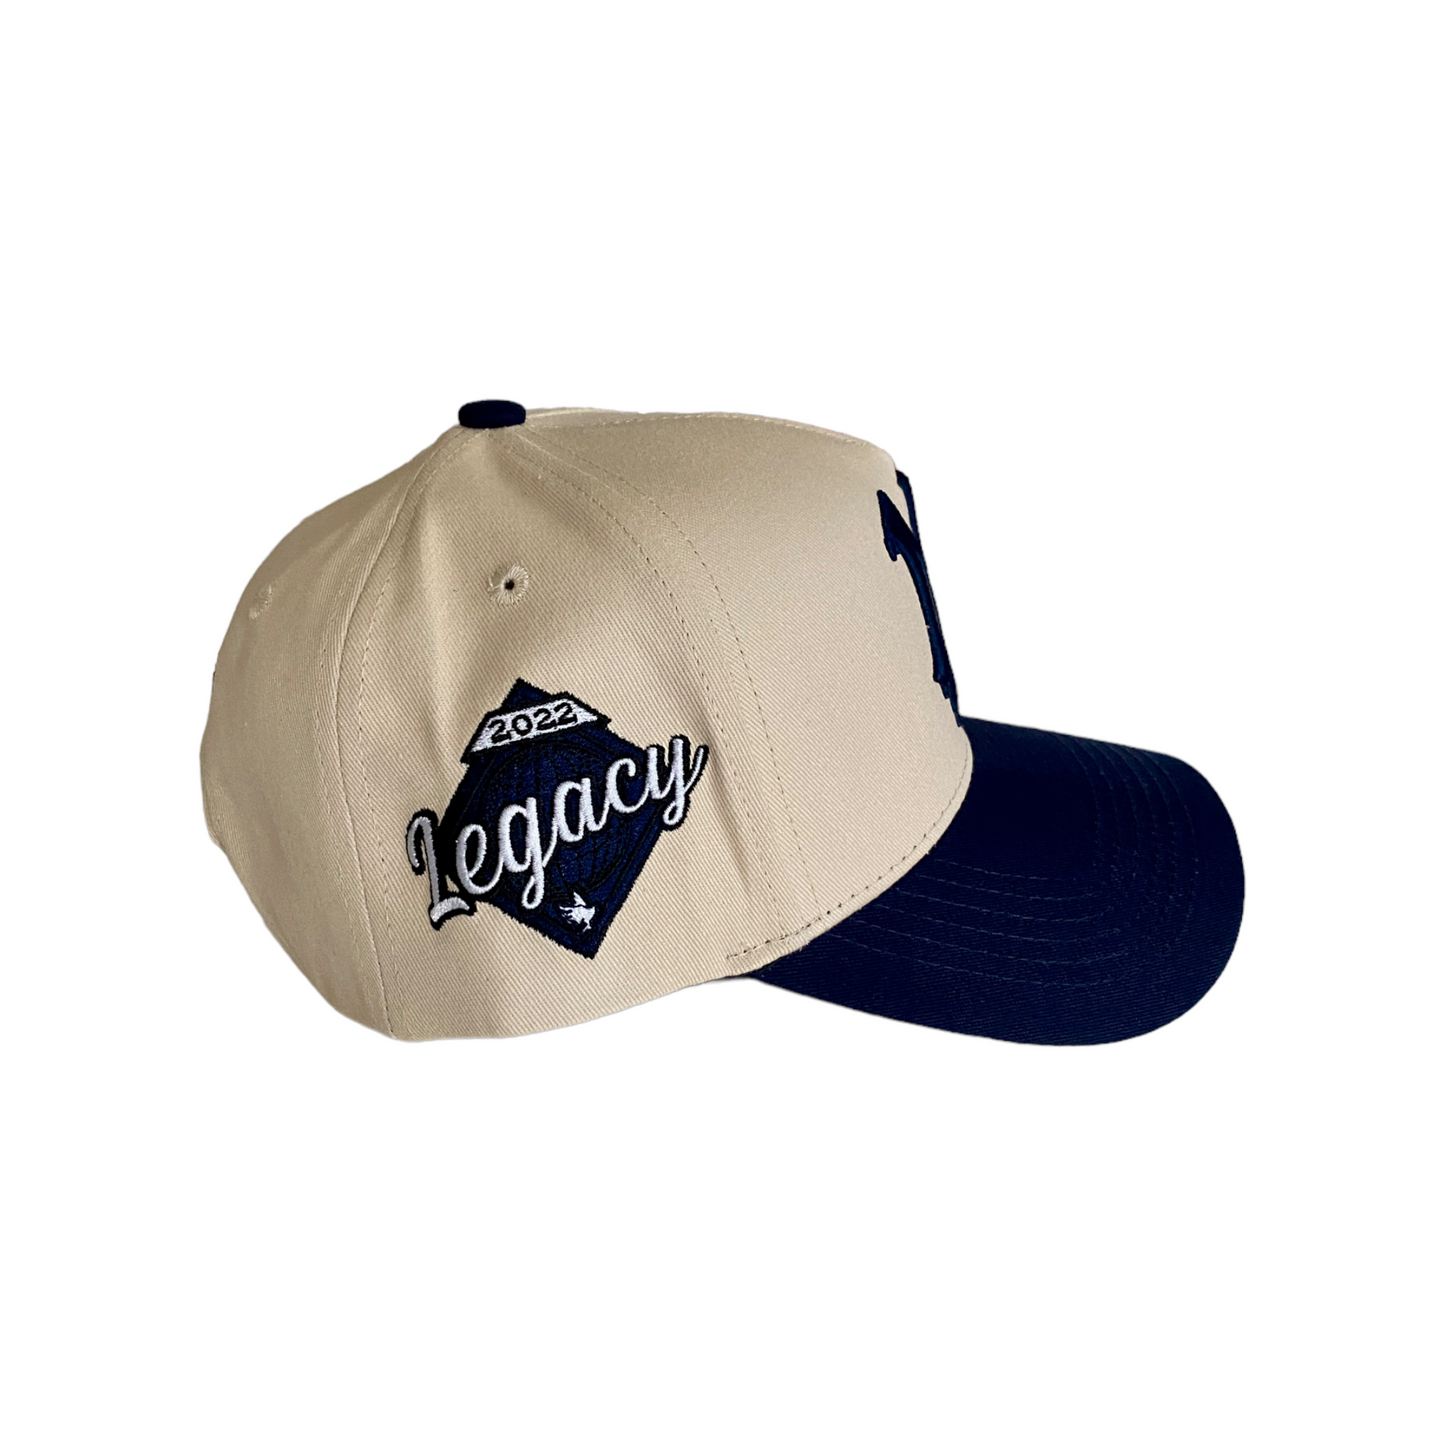 NY Legacy Hat *Modern Navy*